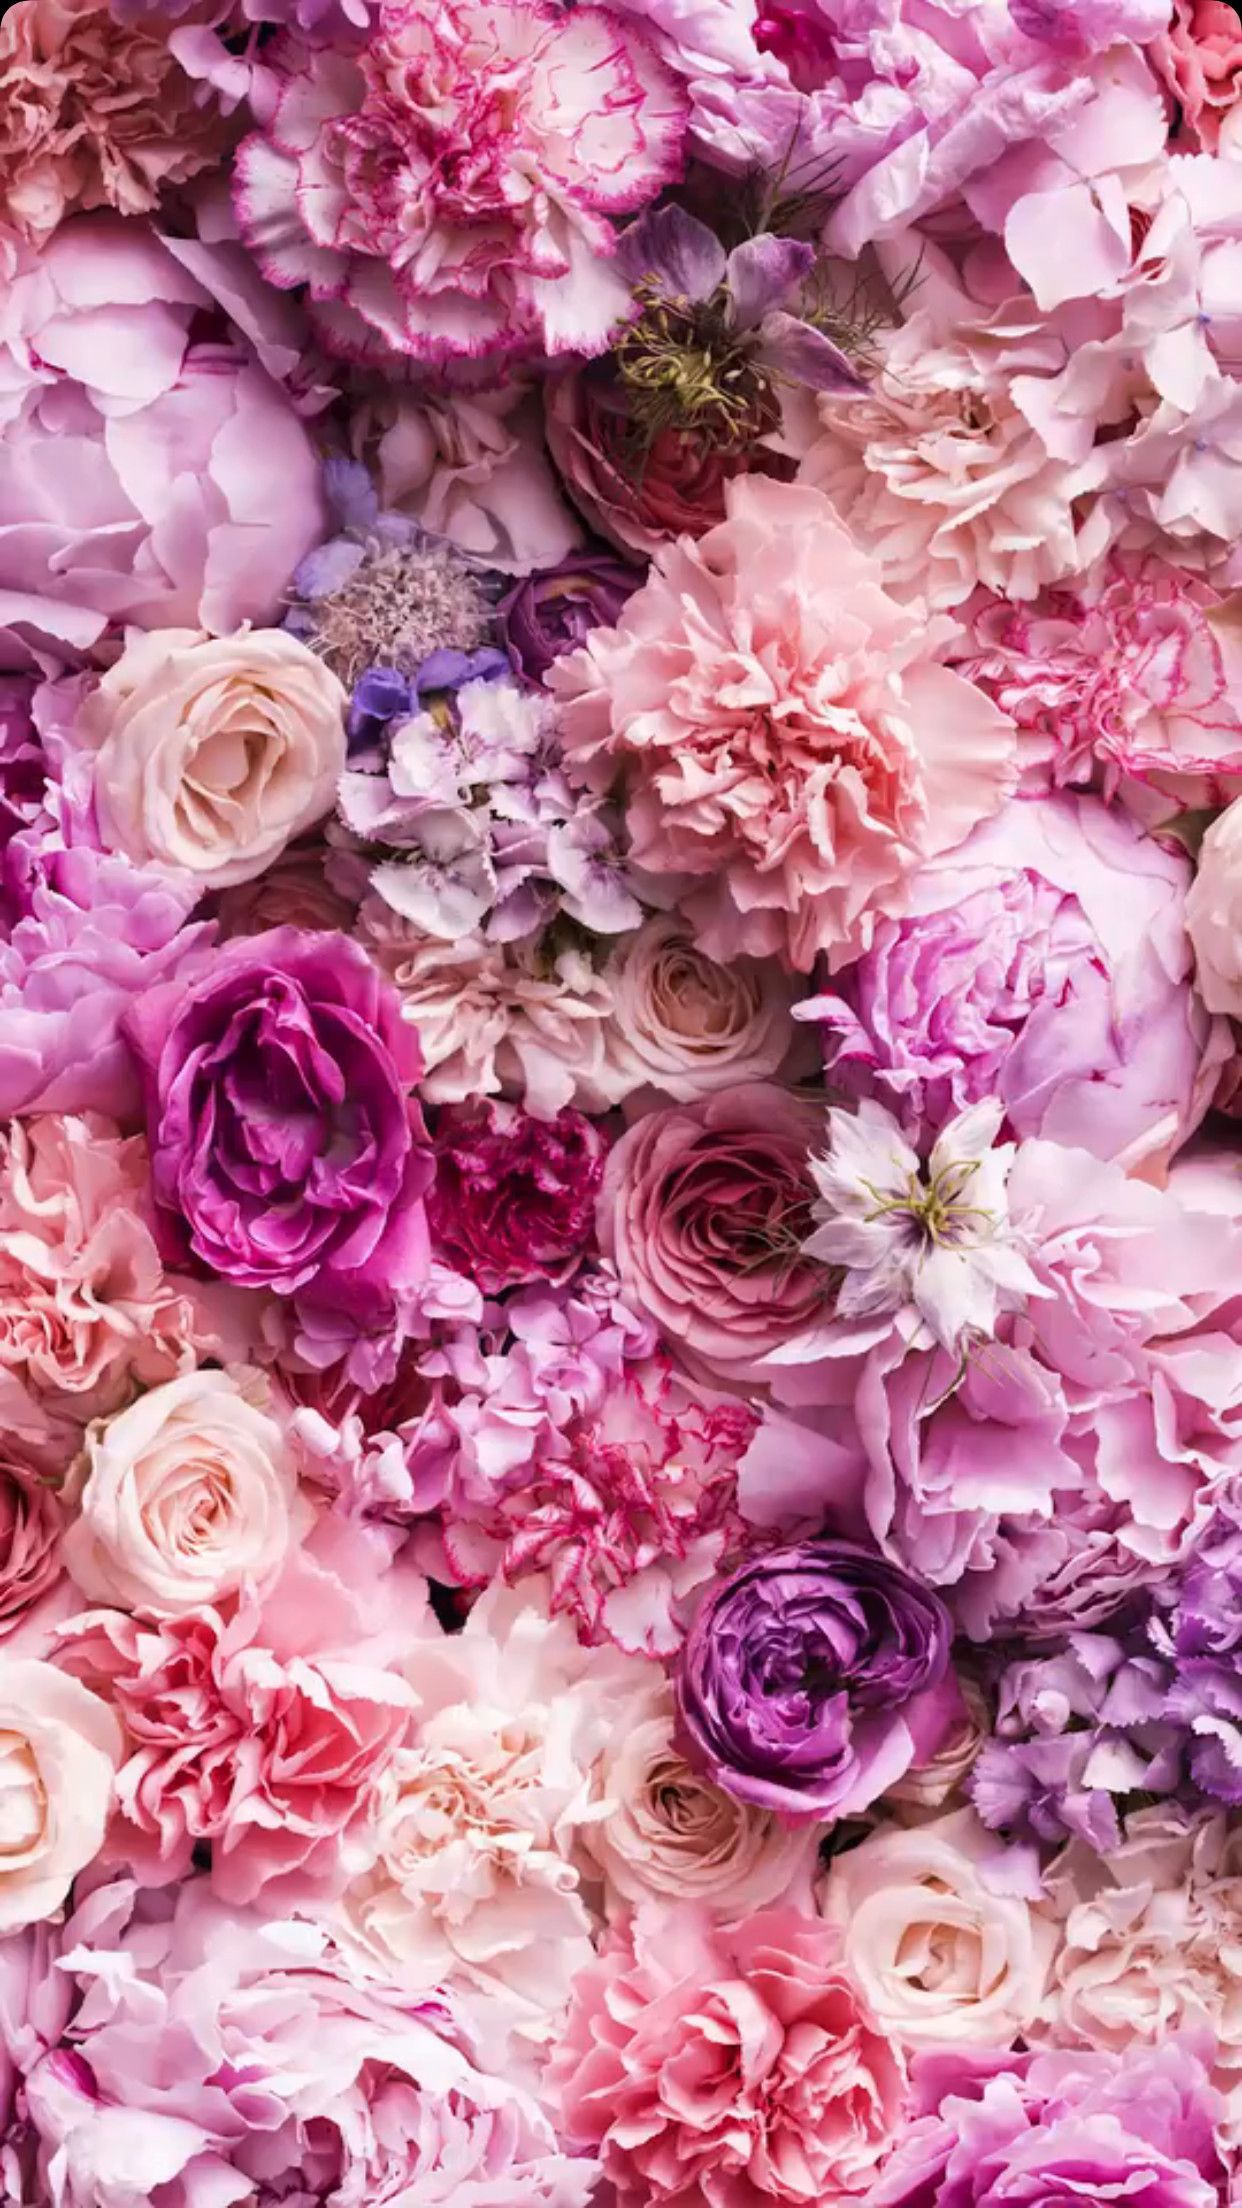 Hãy chiêm ngưỡng tinh túy thiên nhiên qua bức ảnh về những bông hoa đầy màu sắc, lãng mạn và ngọt ngào. Những bông hoa đại diện cho tình yêu, tình bạn hay sự tri ân. Mỗi loại hoa đều mang một ý nghĩa riêng và thể hiện vẻ đẹp độc đáo của chúng.